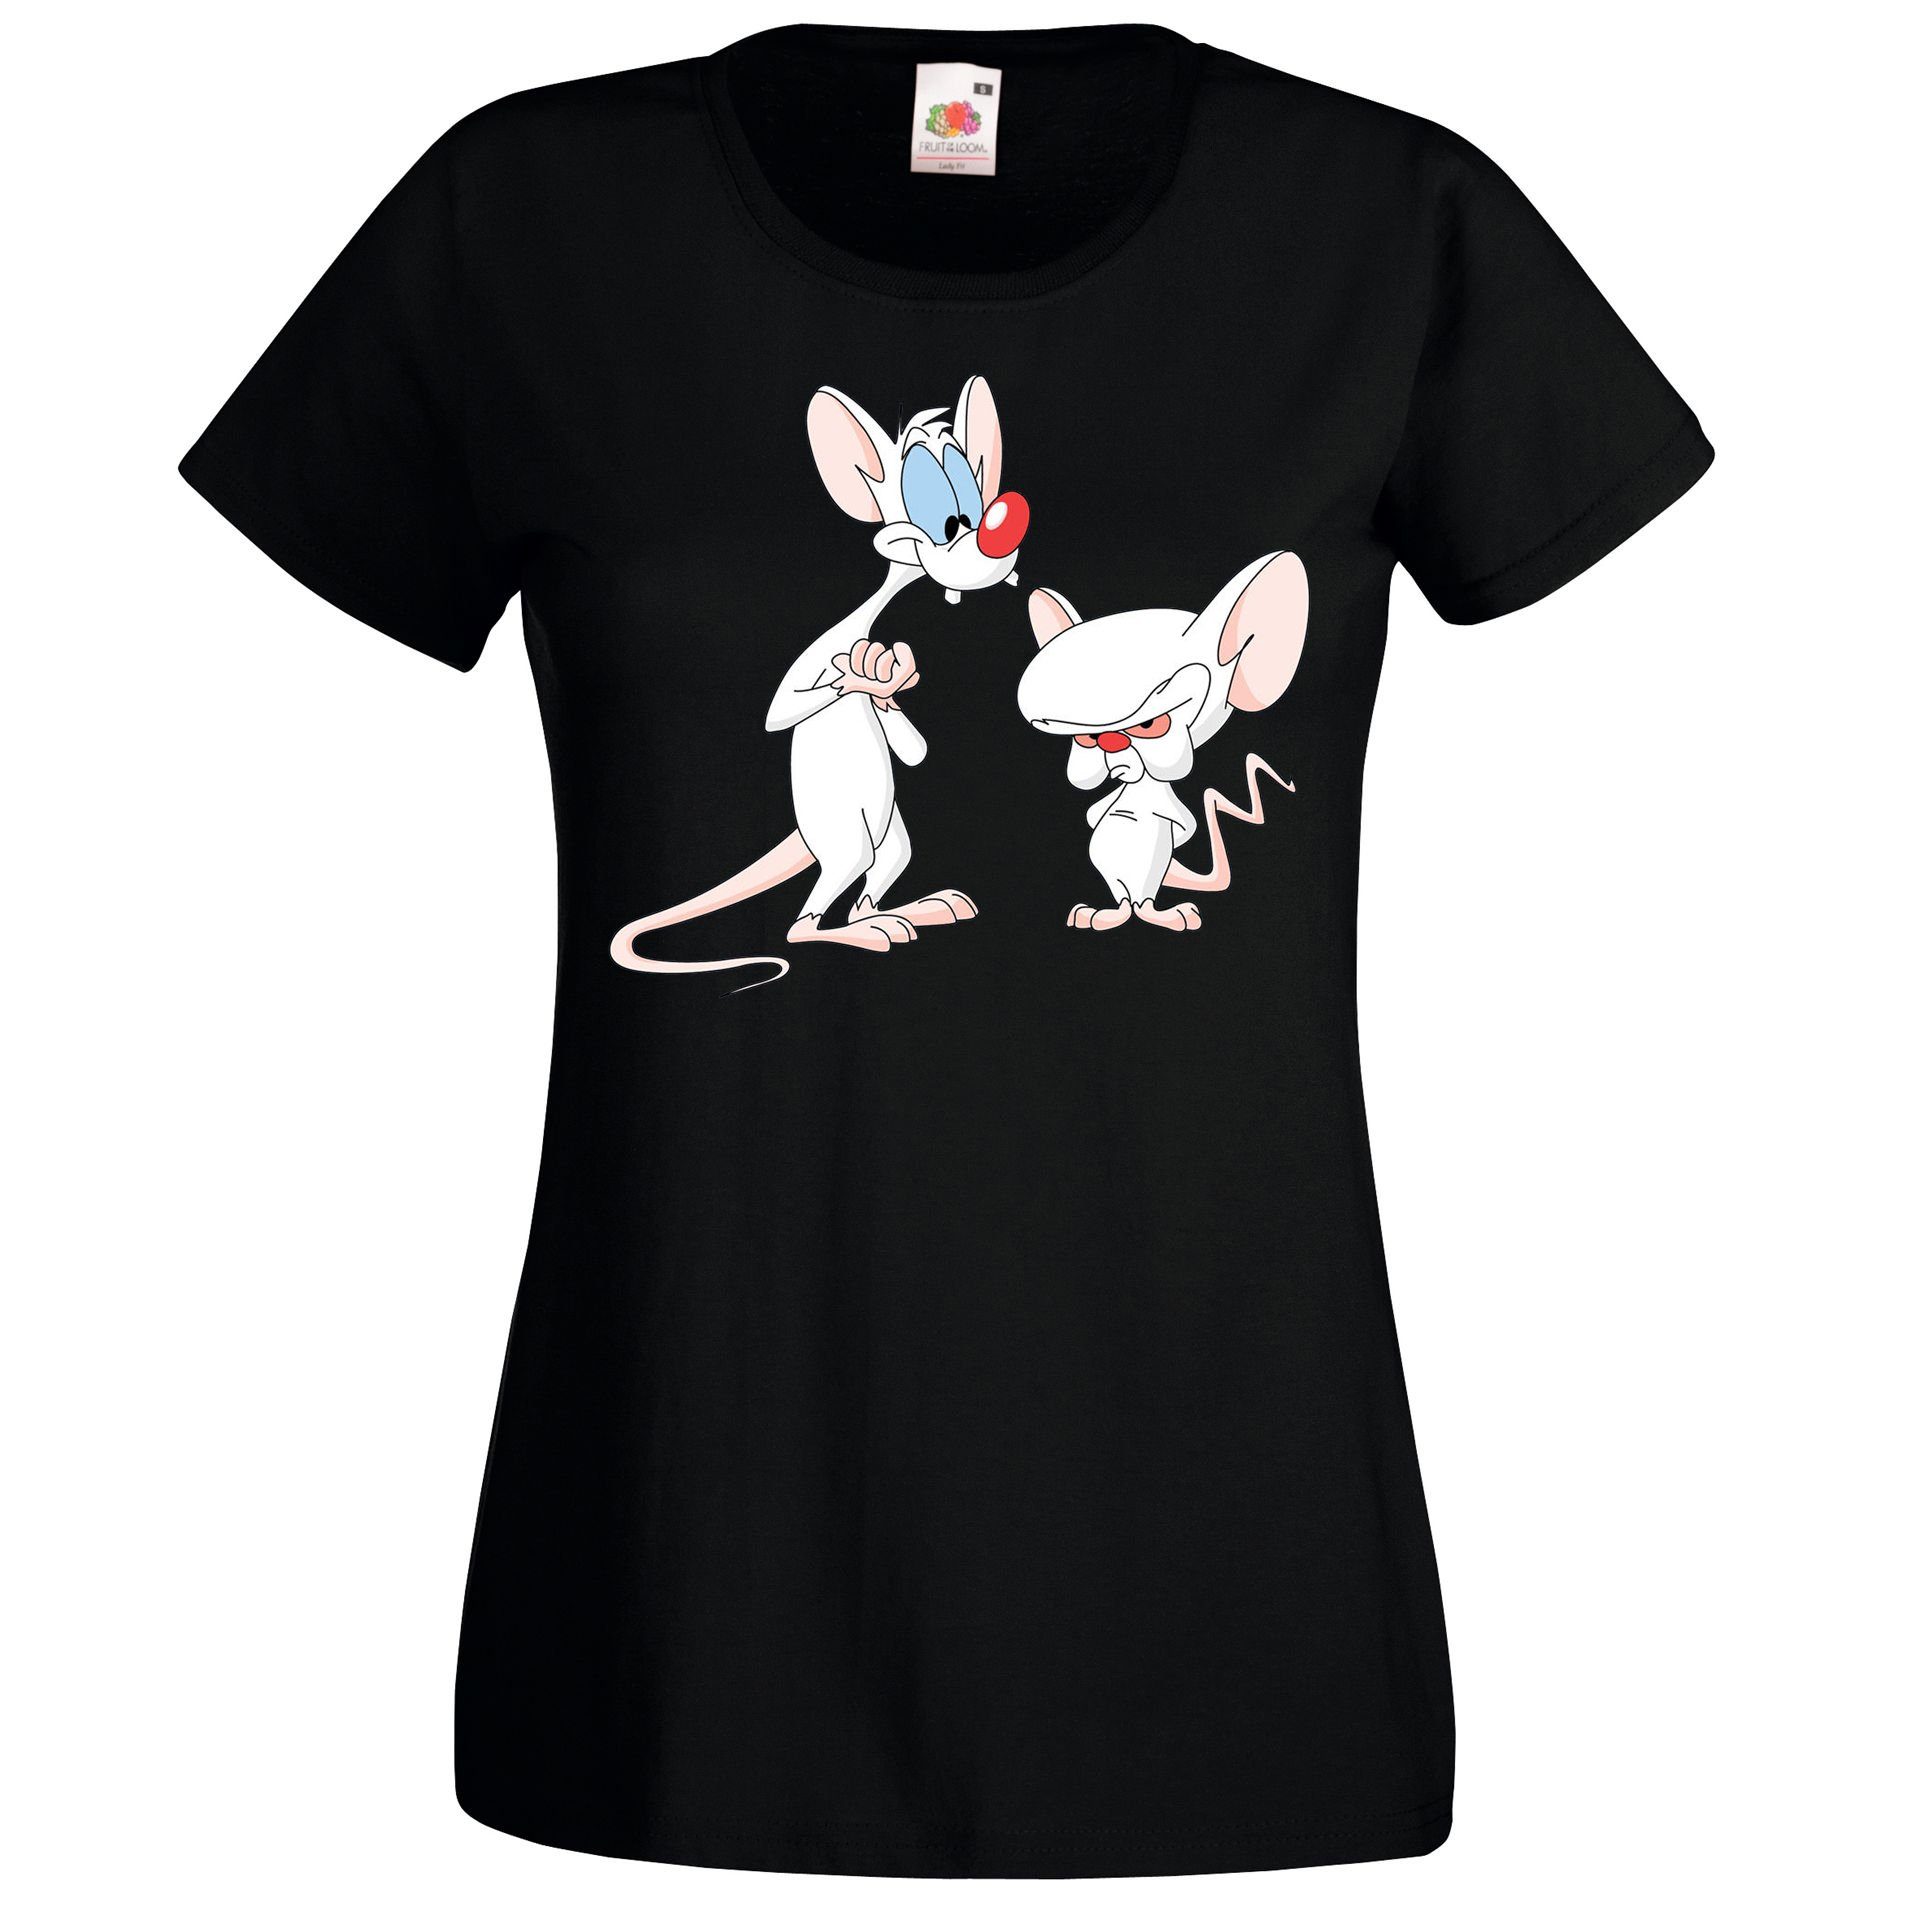 und T-Shirt Damen modischem Pinky Schwarz Brain mit Designz T-Shirt Youth Print